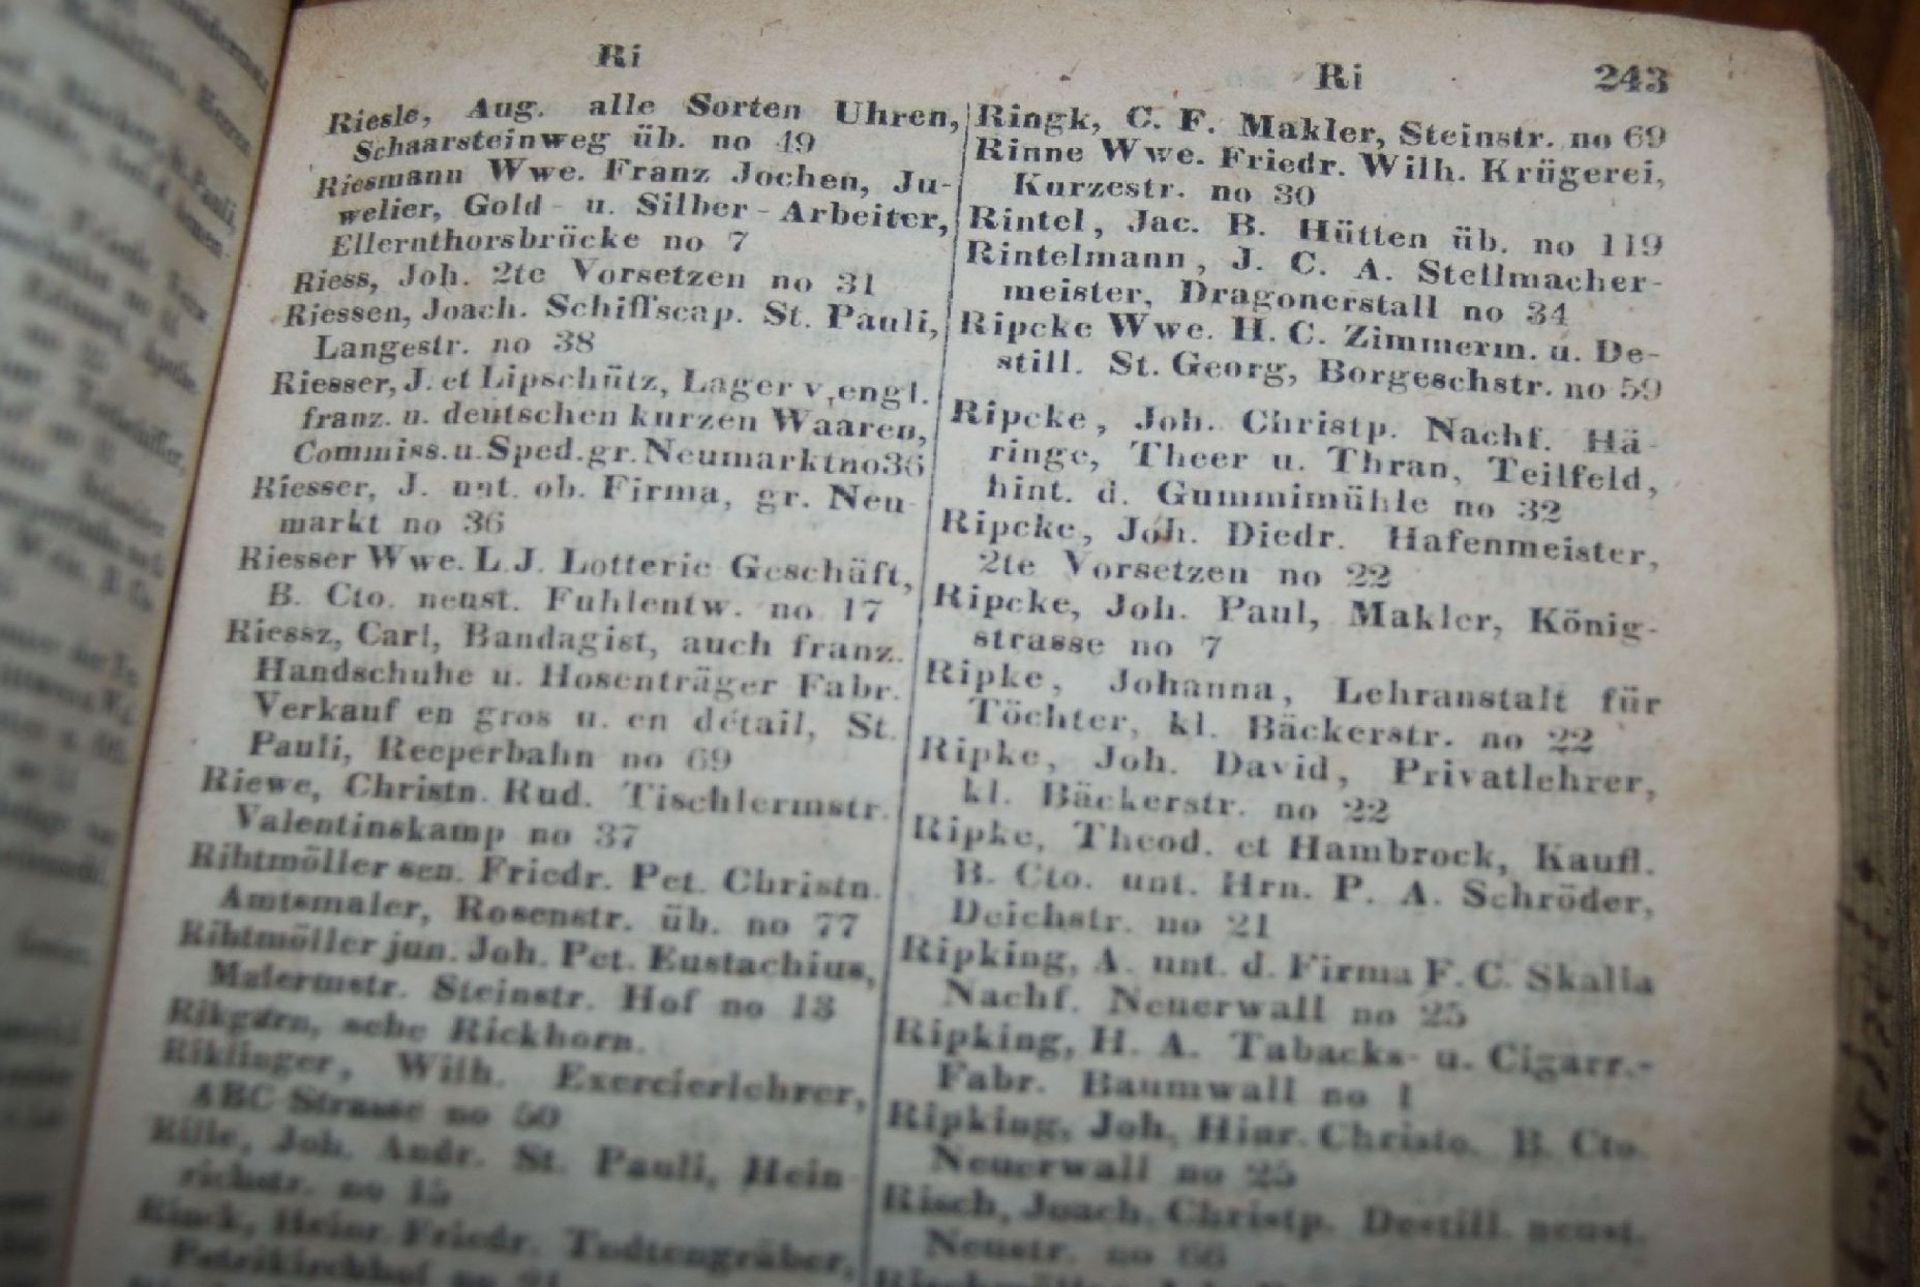 Hamburgisches Adress-Buch 1836, Bibliothekseinband, seitl. beschriftet, 20x13 cm, H-6,5 cm- - -22.61 - Bild 5 aus 9